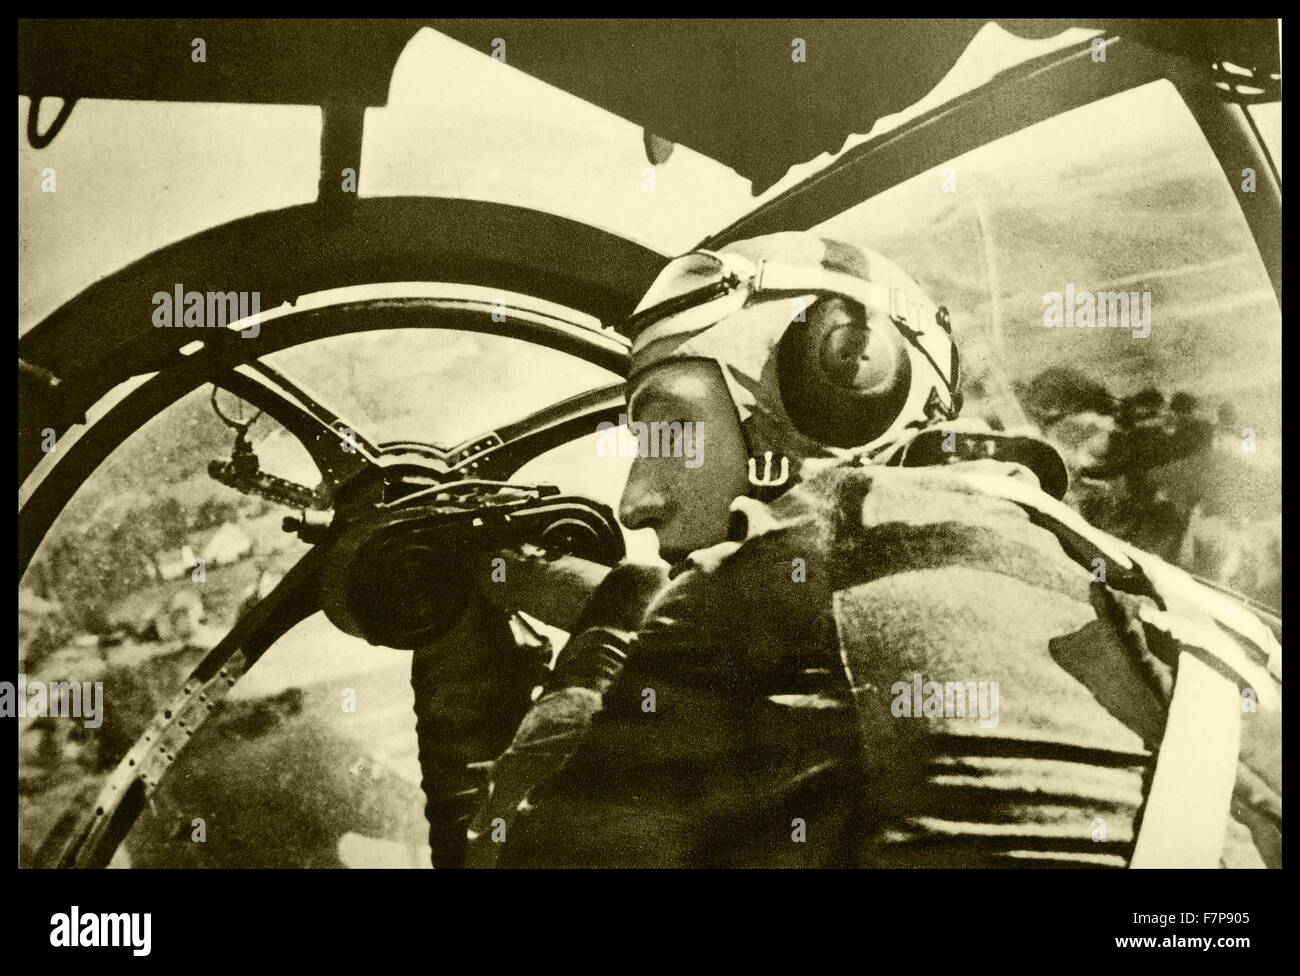 Ein deutscher Soldat wird in Bauchlage in einem deutschen Flugzeug mit einem montierten Maschinengewehr angezeigt. Aufgenommen im Jahr 1940 während des zweiten Weltkriegs. Stockfoto